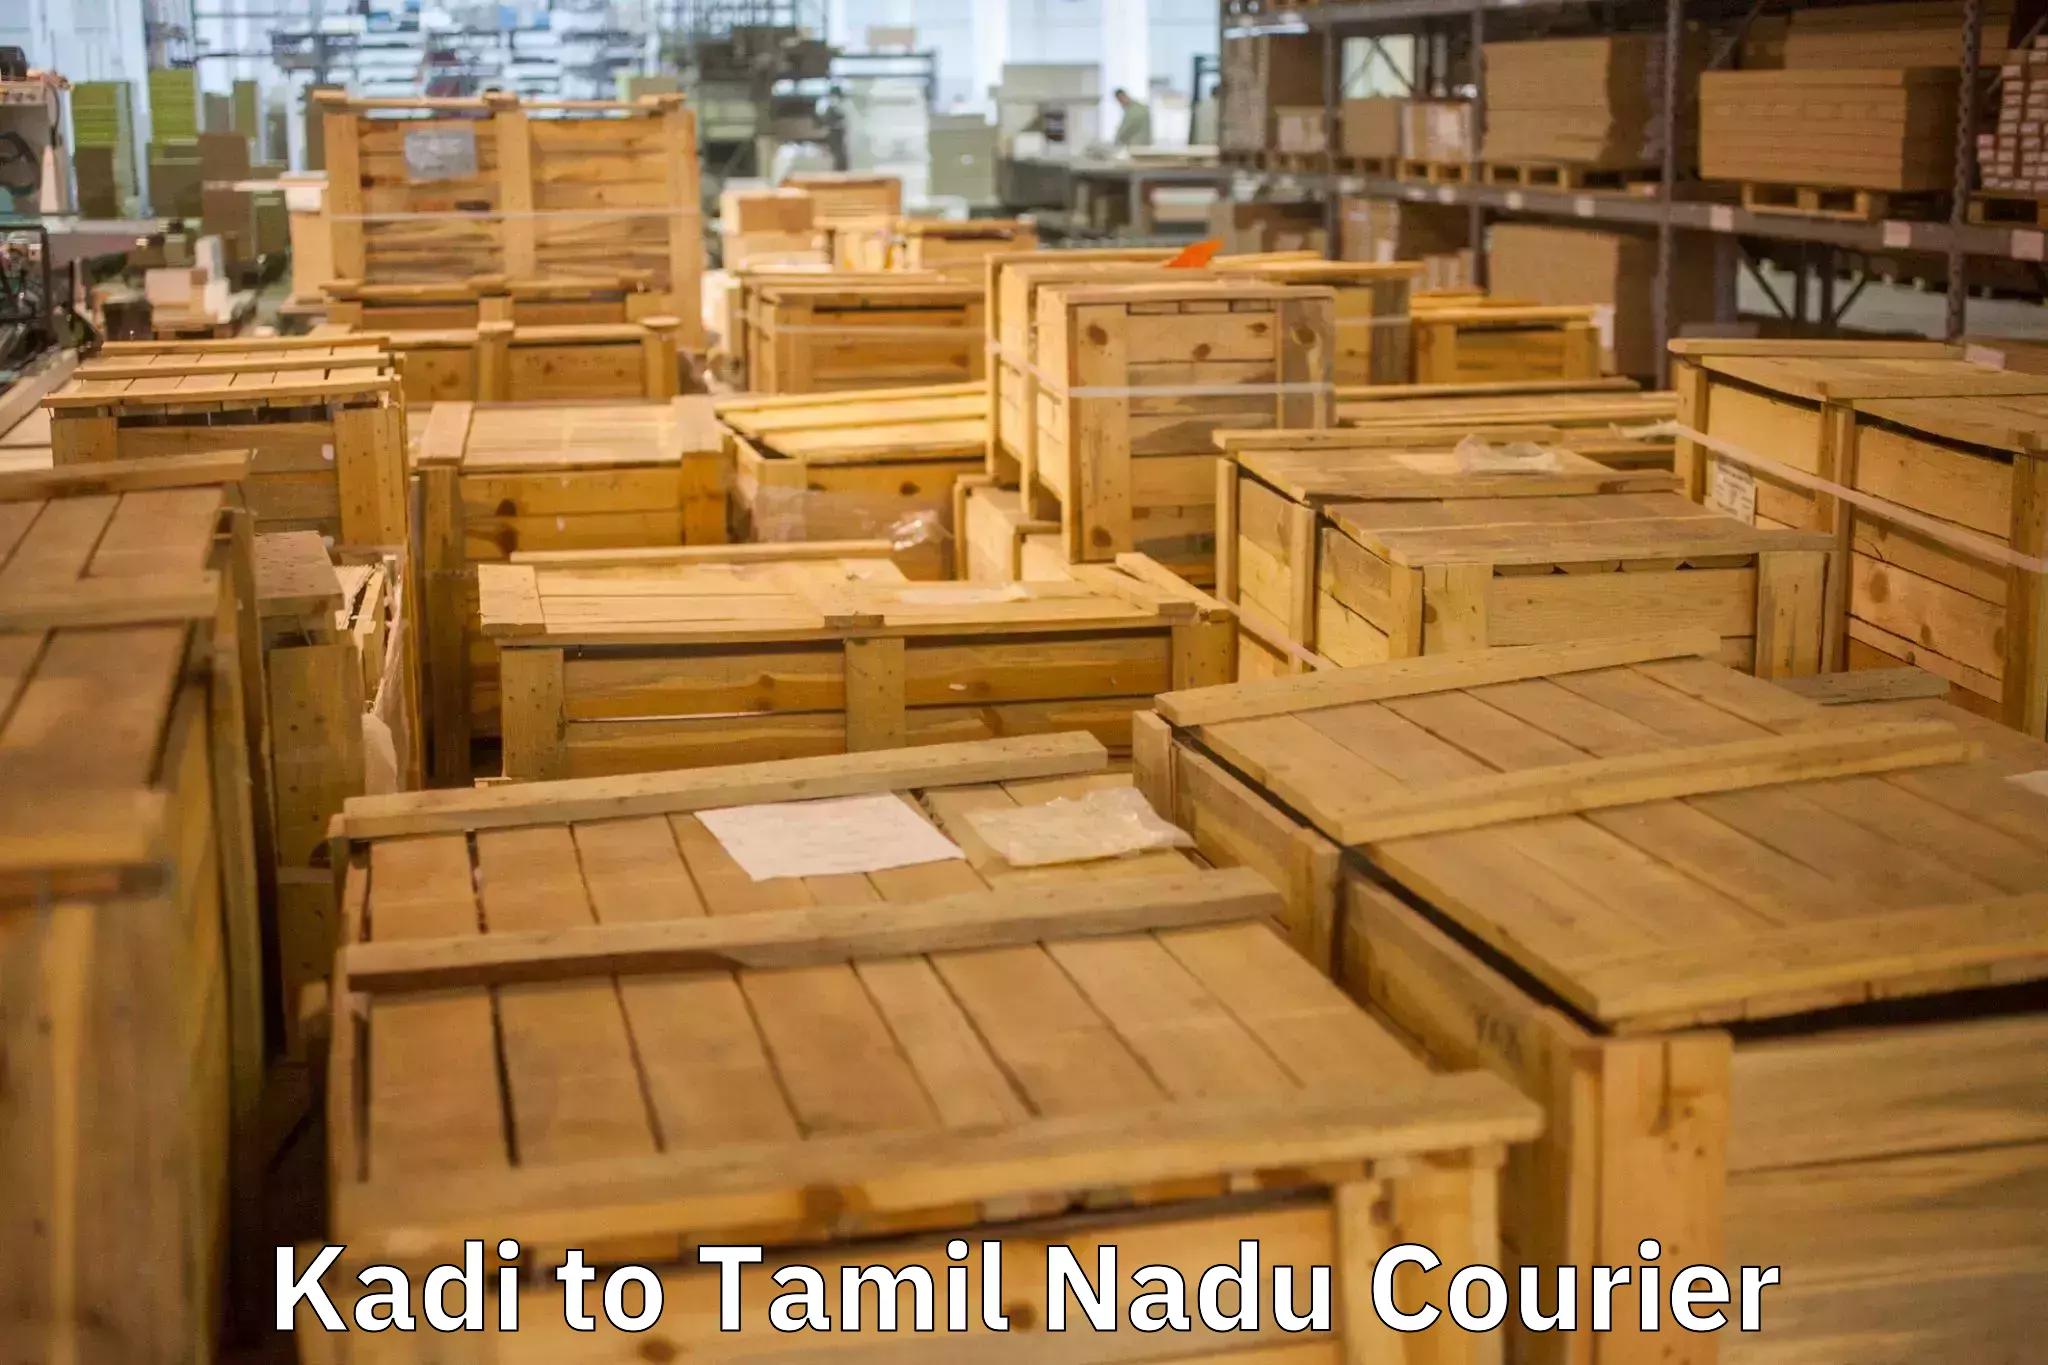 Furniture transport and logistics Kadi to Suramangalam